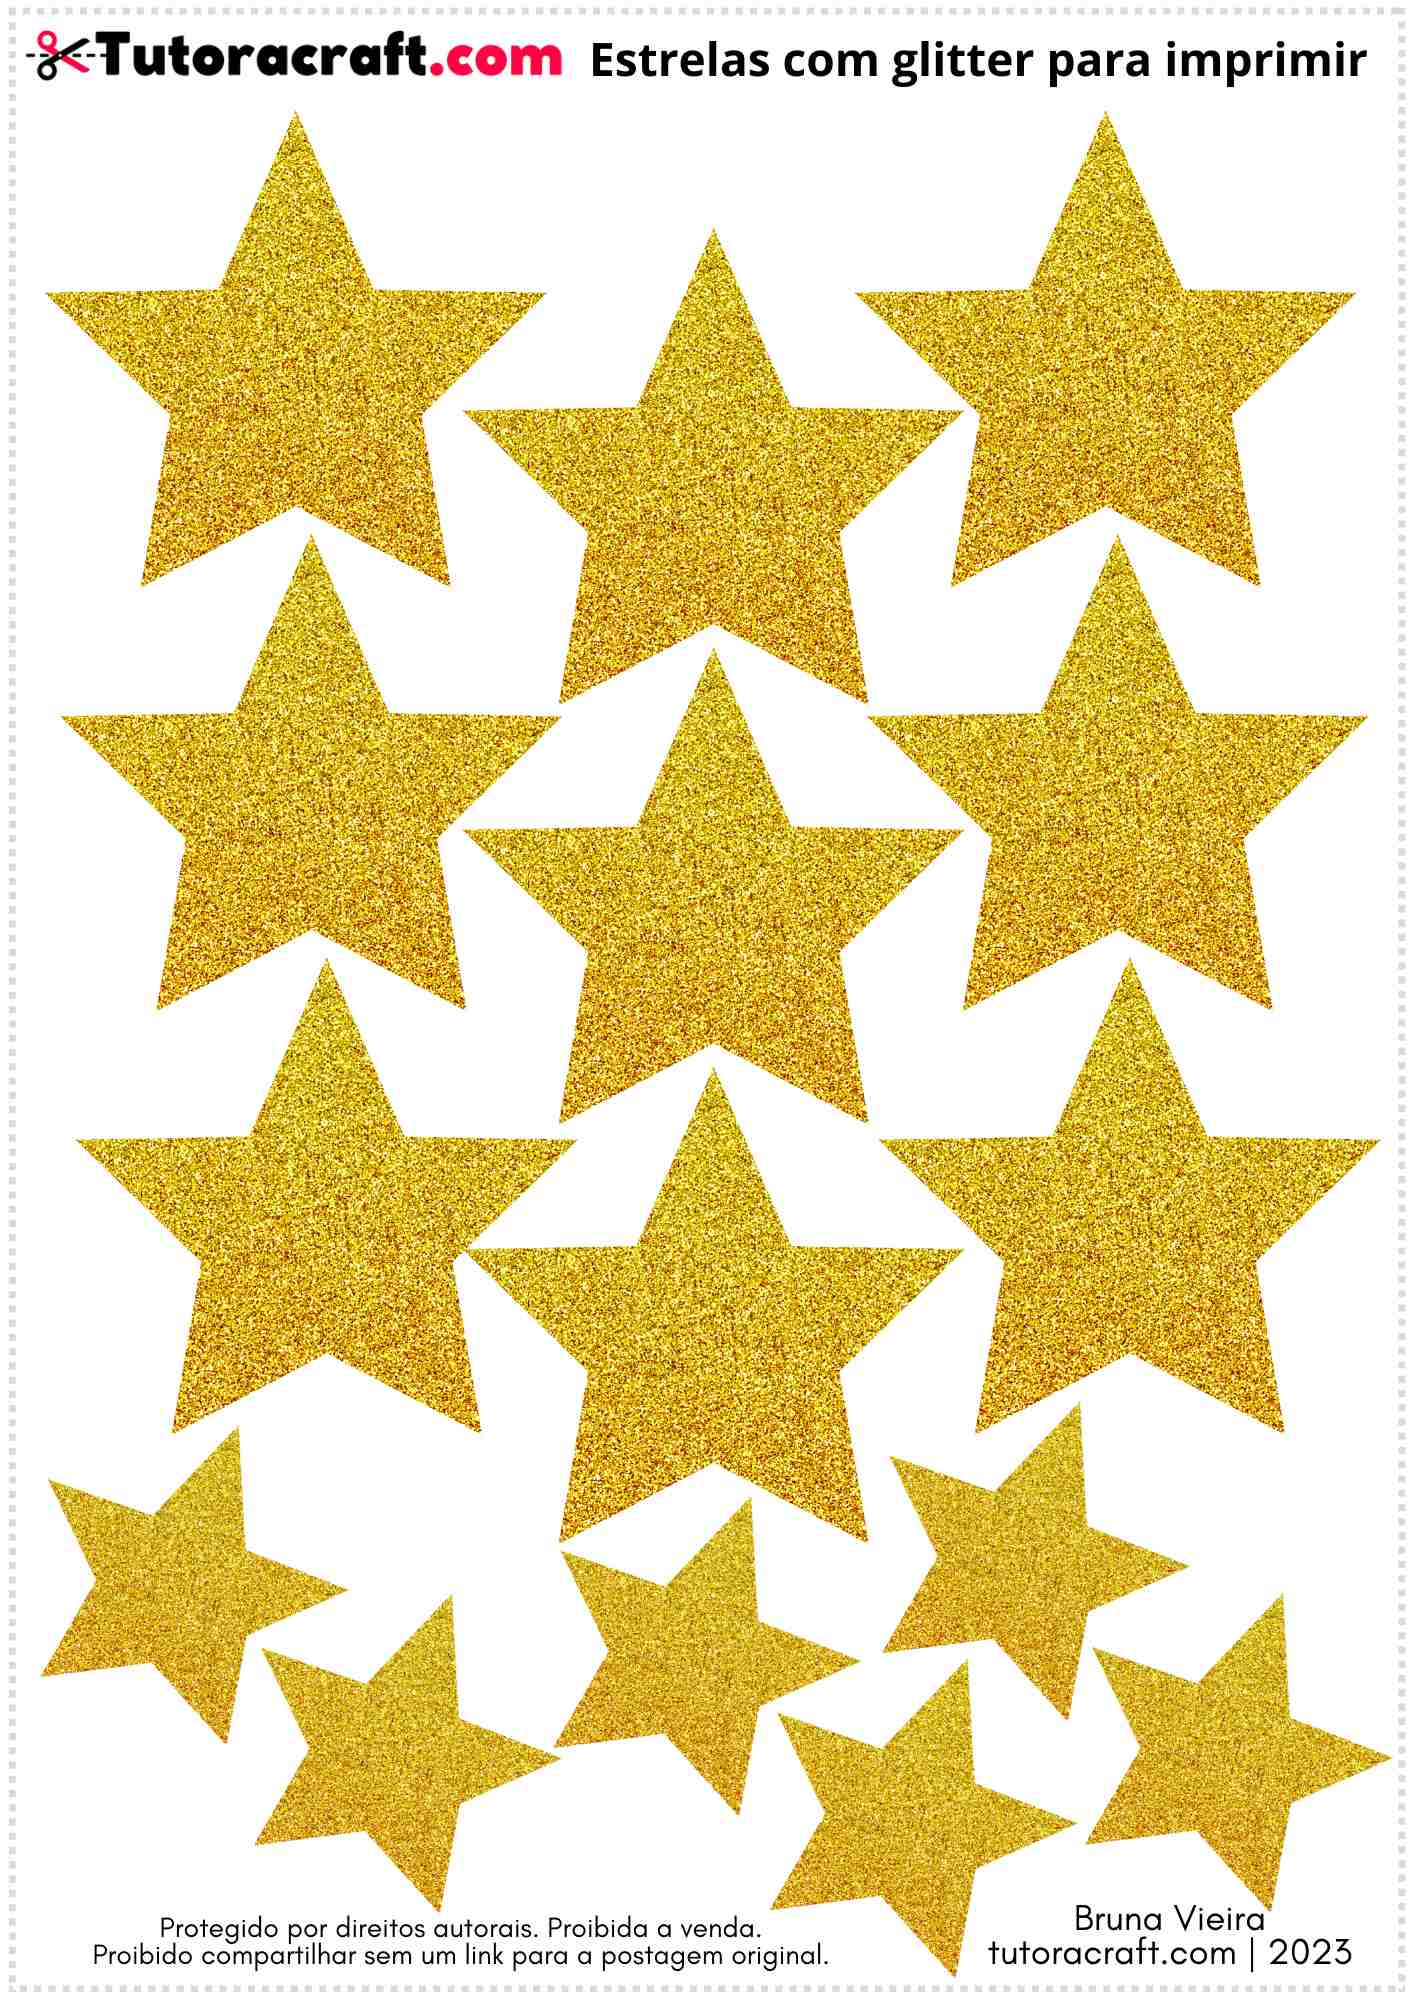 Estrelas com glitter dourado para imprimir